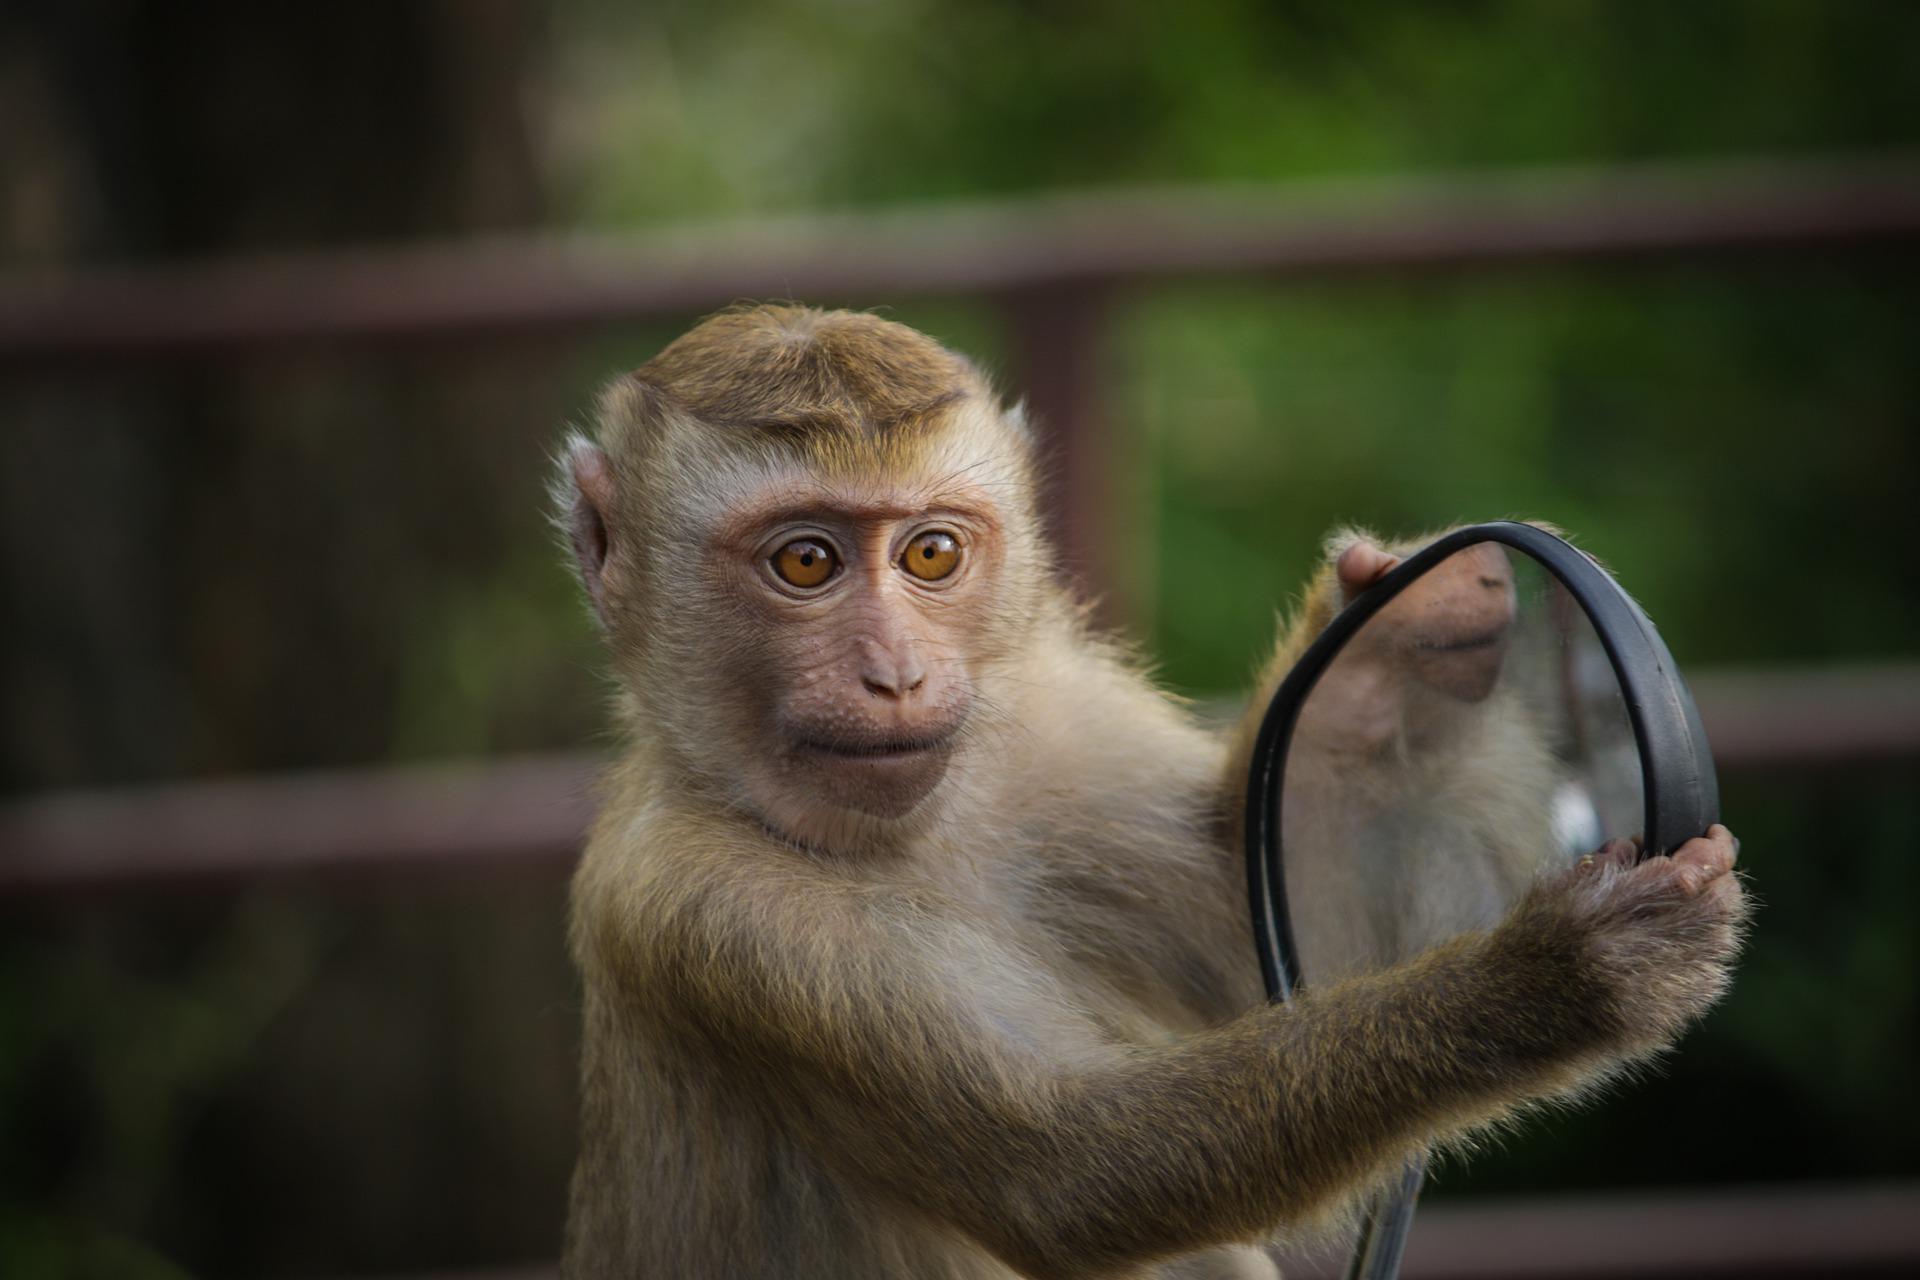 JK patvirtino beždžionių raupų plitimą šalies teritorijoje